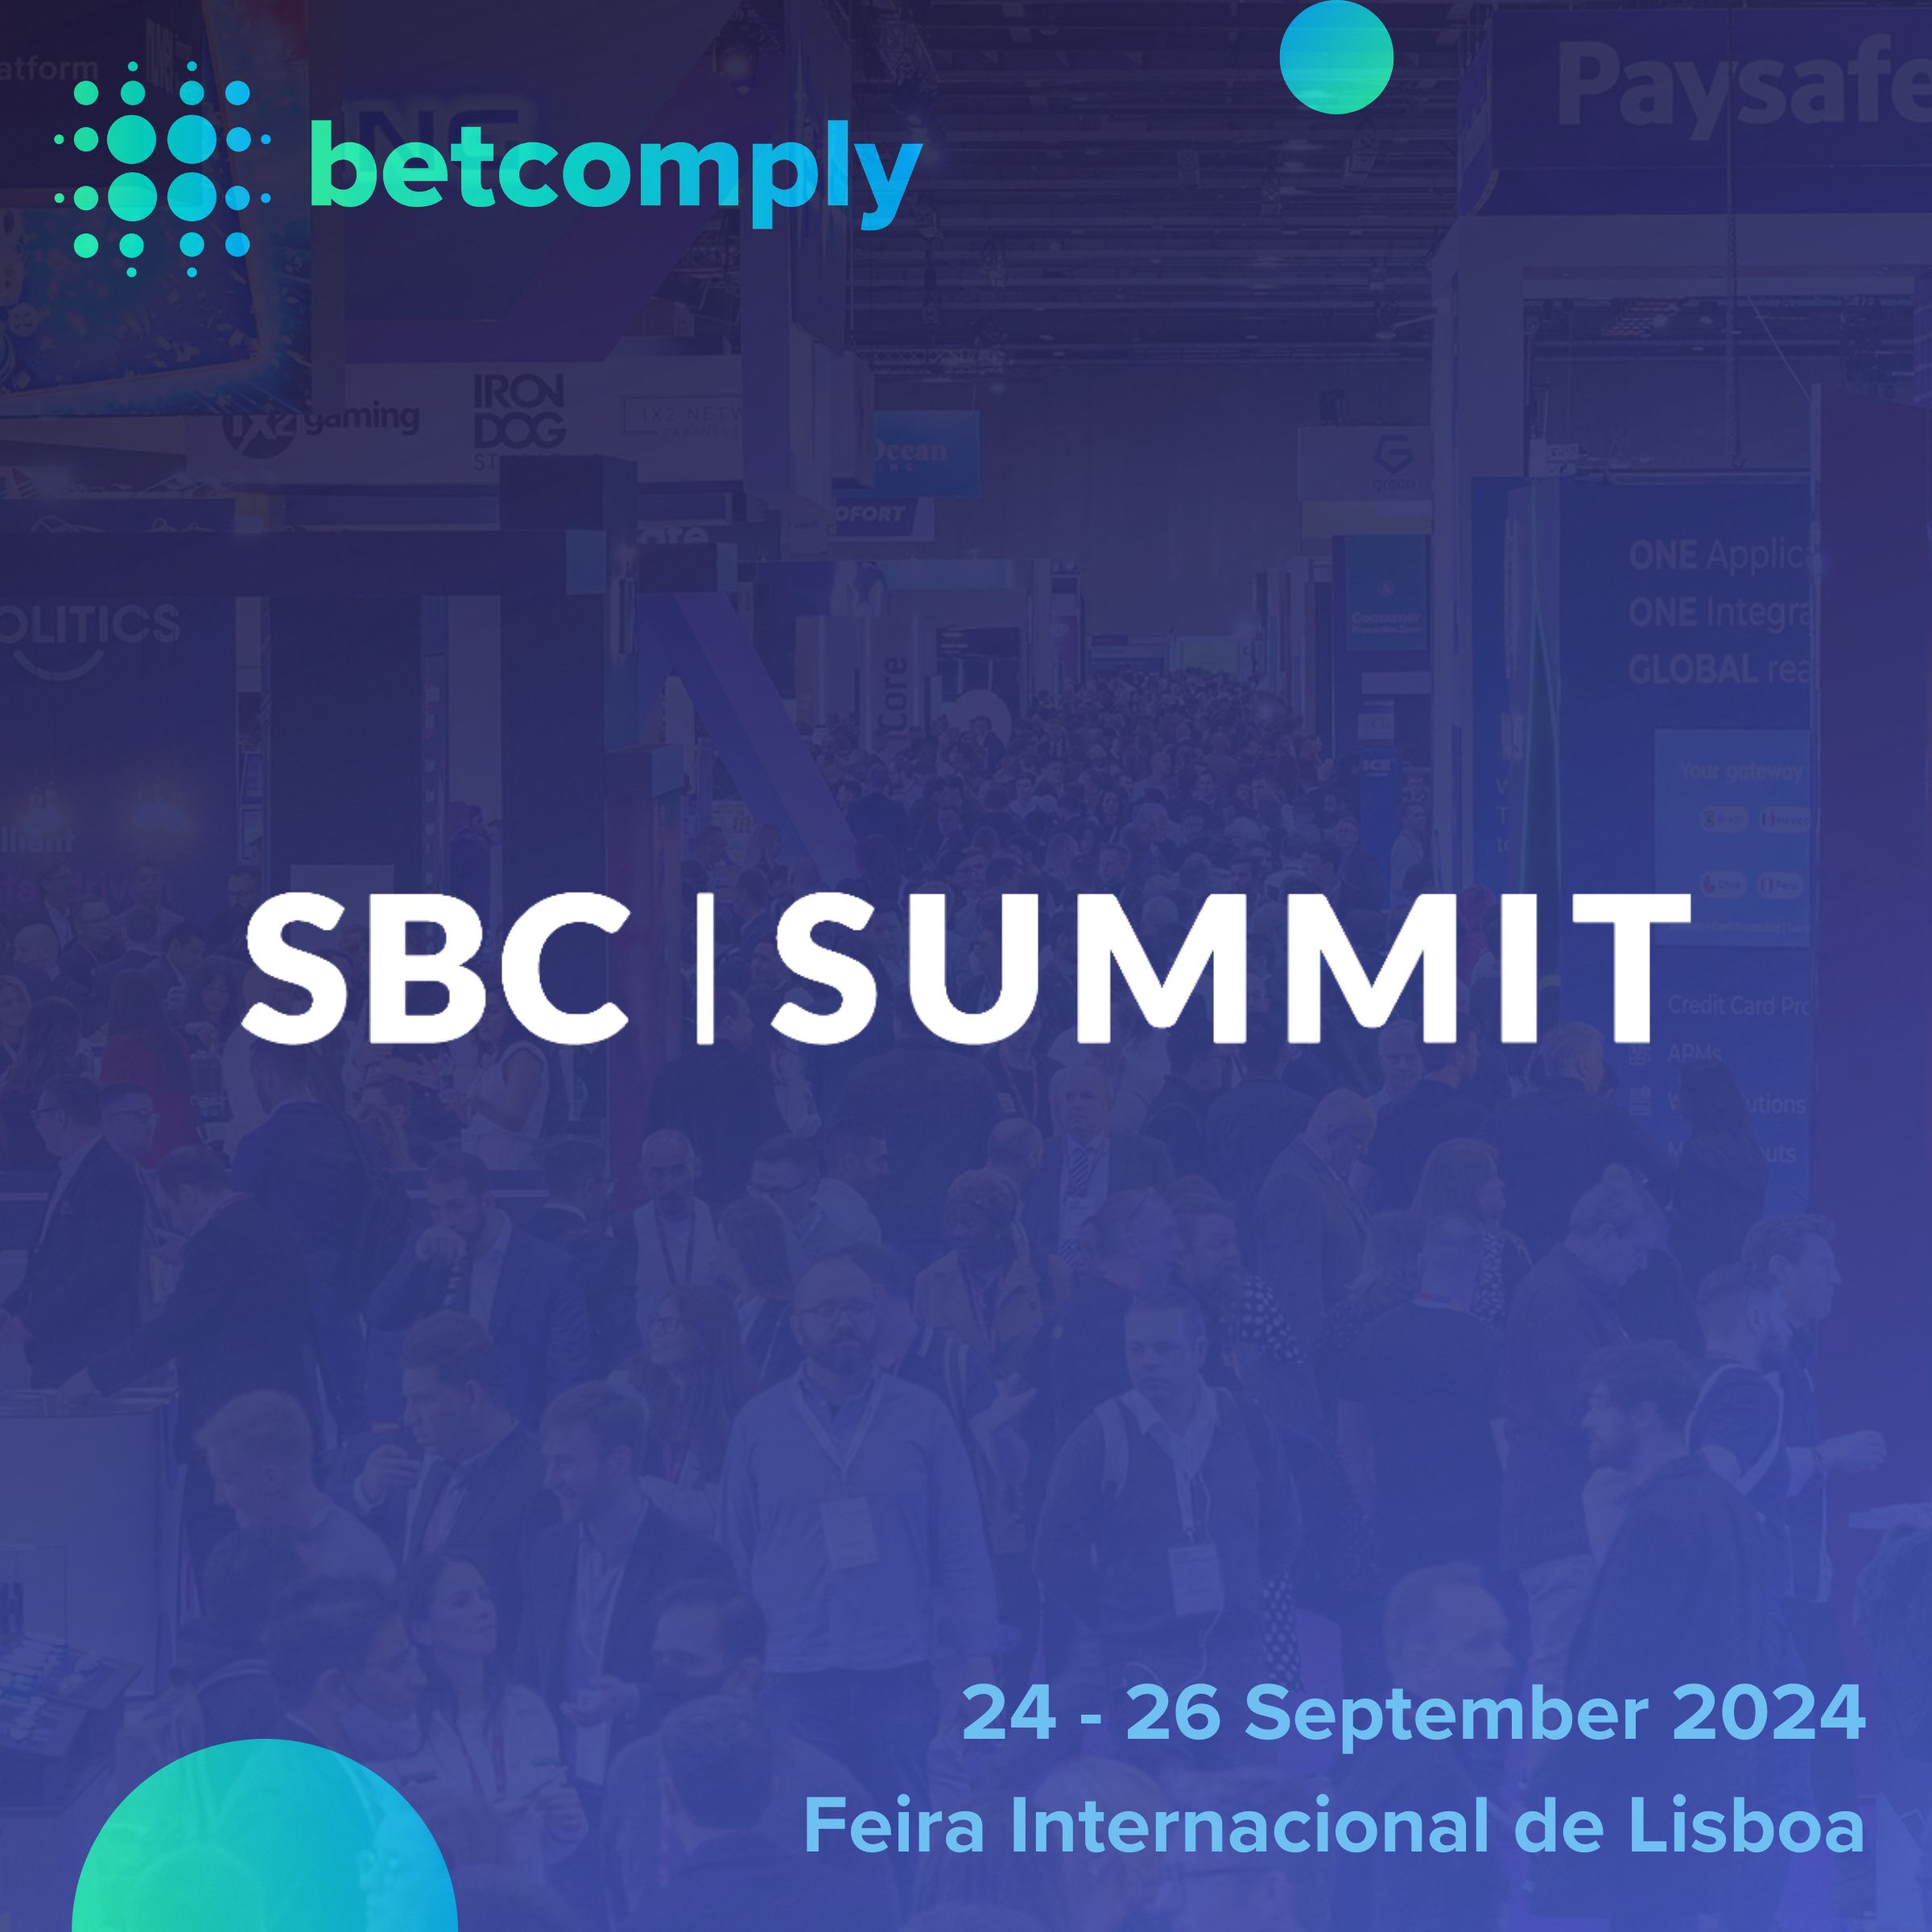 Meet BetComply at SBC Summit